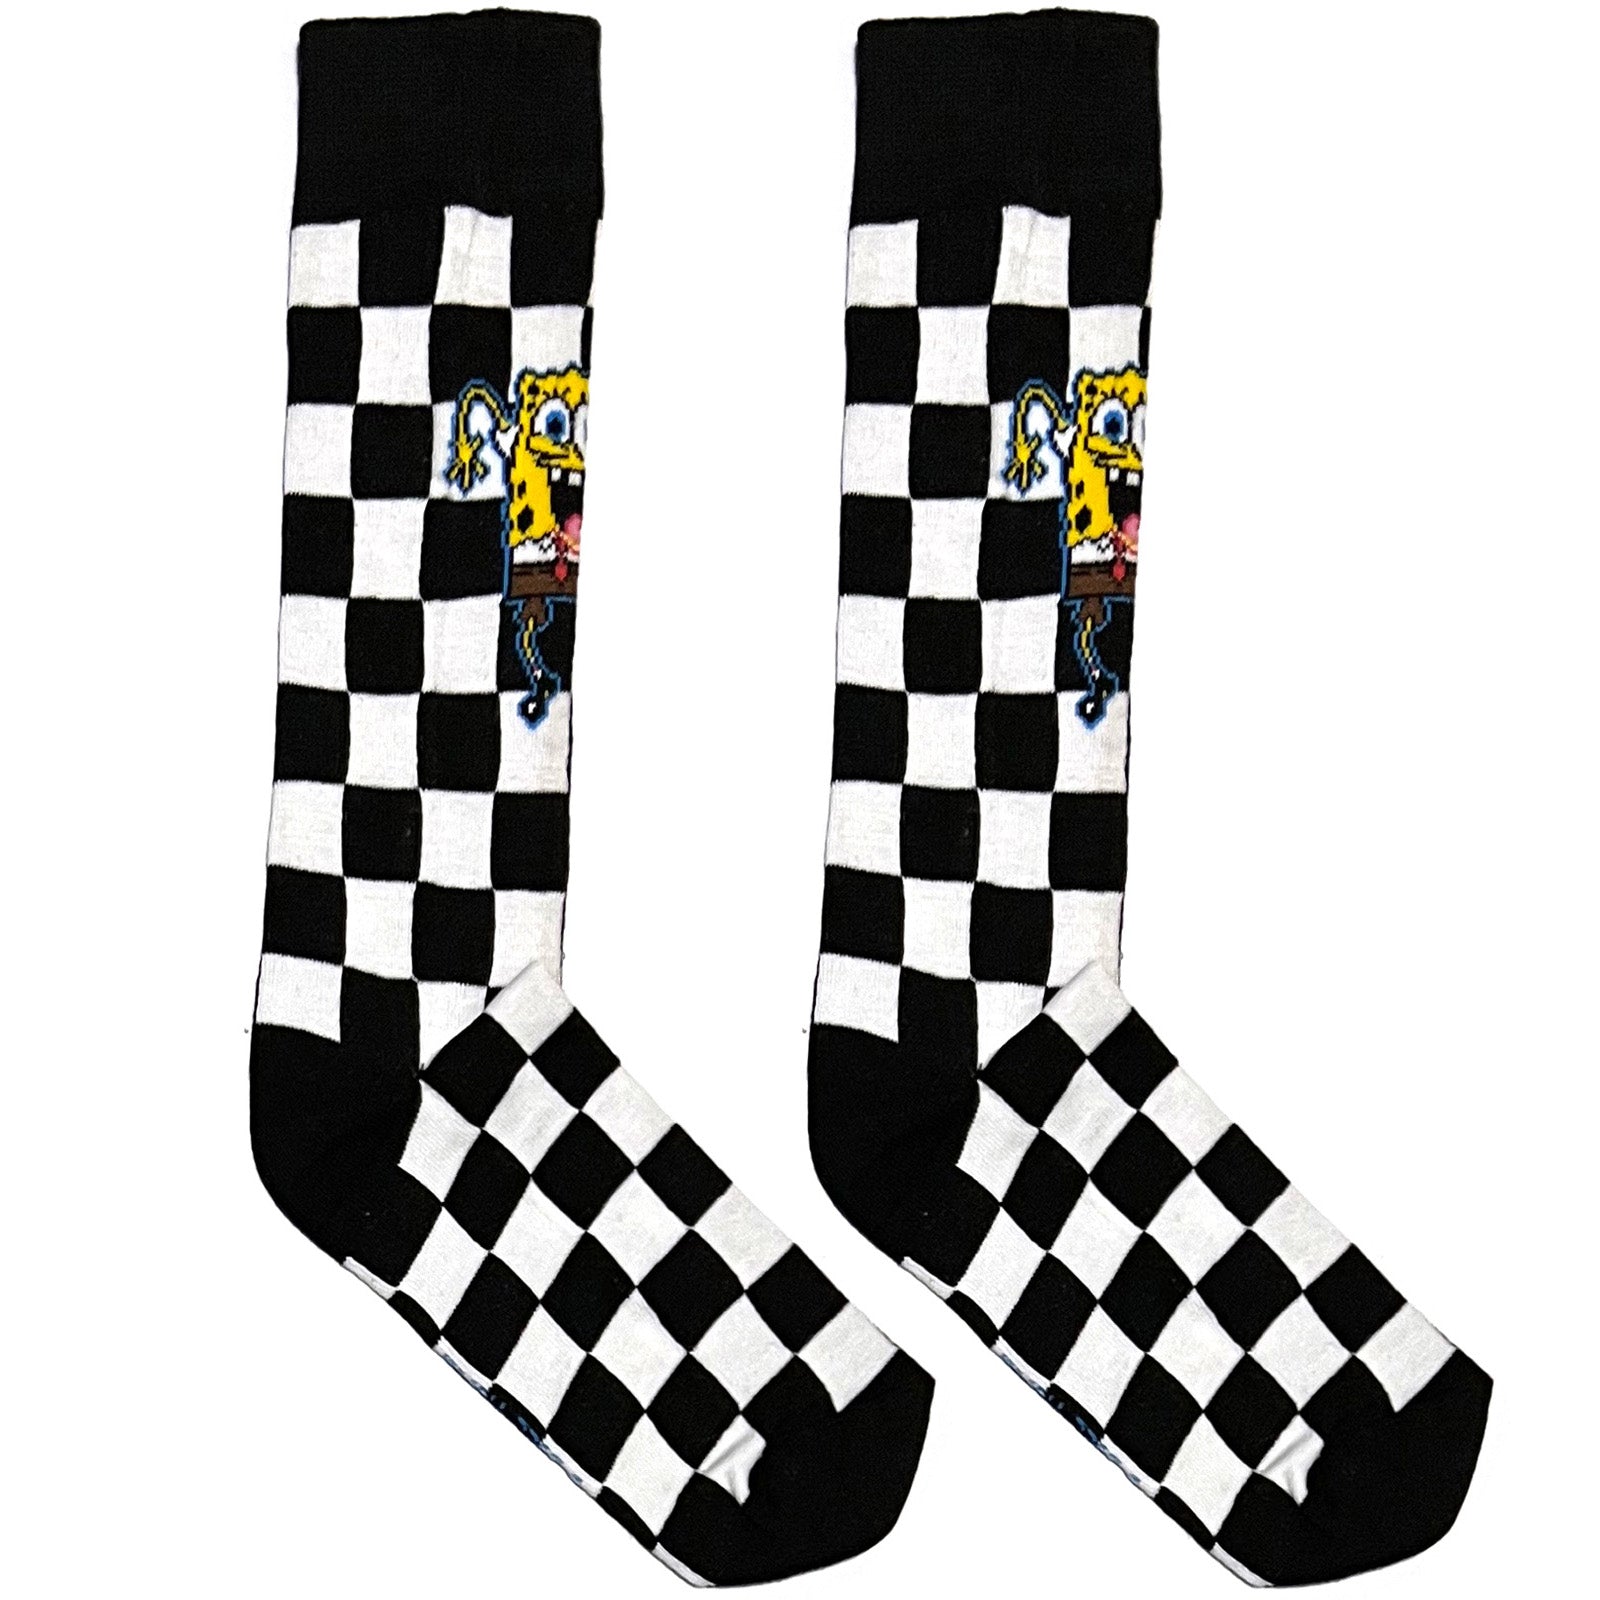 Black And White Sponge Bob Chequered Socks